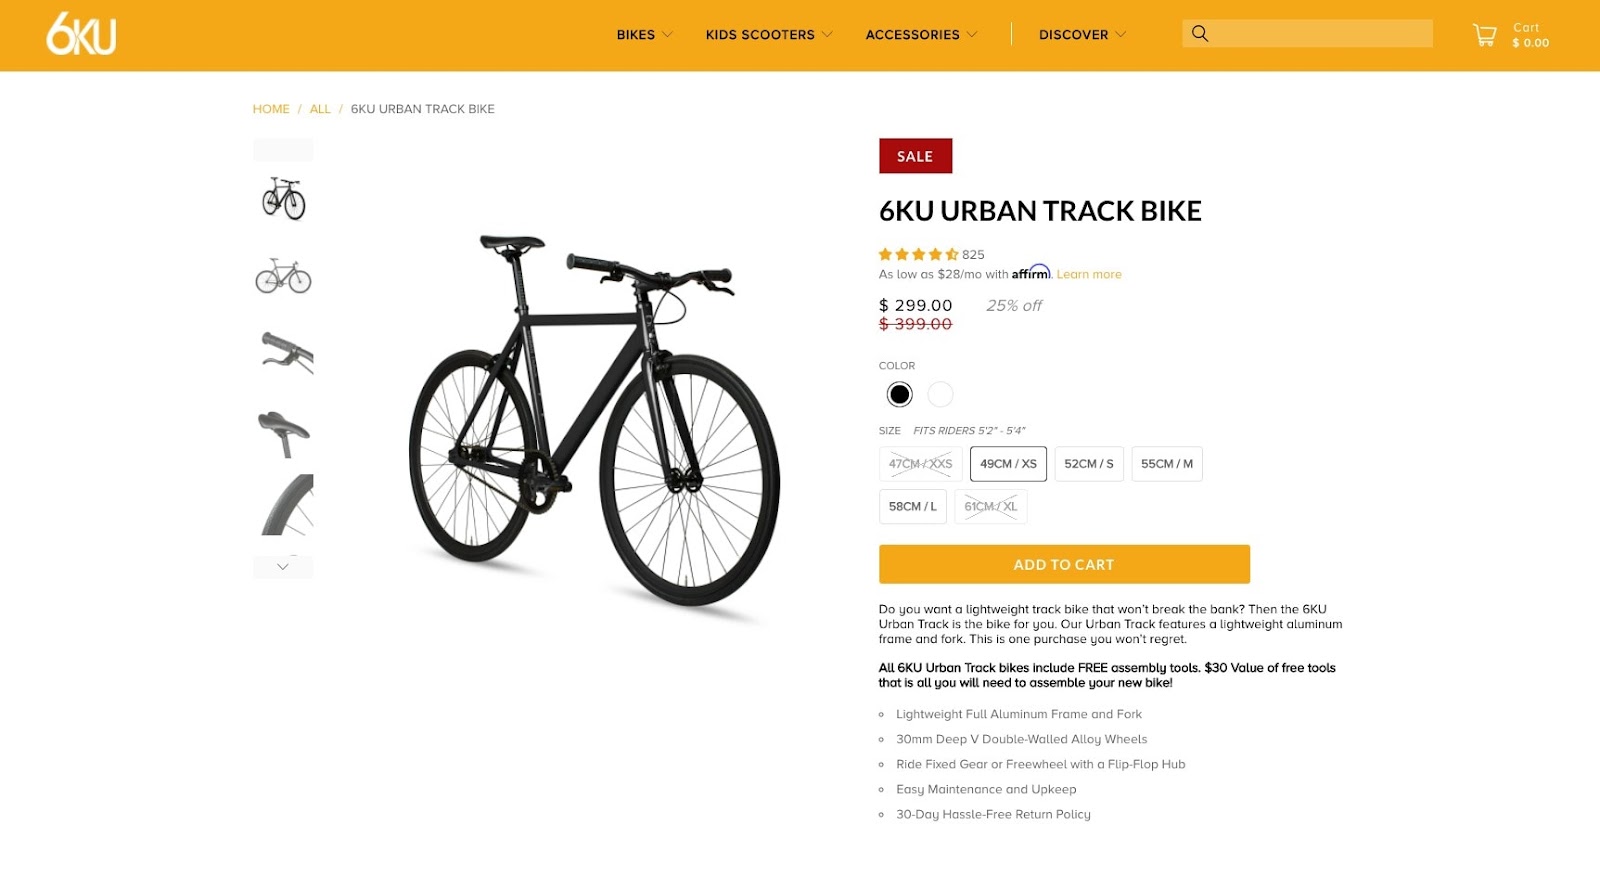 6ku urban track bike product page